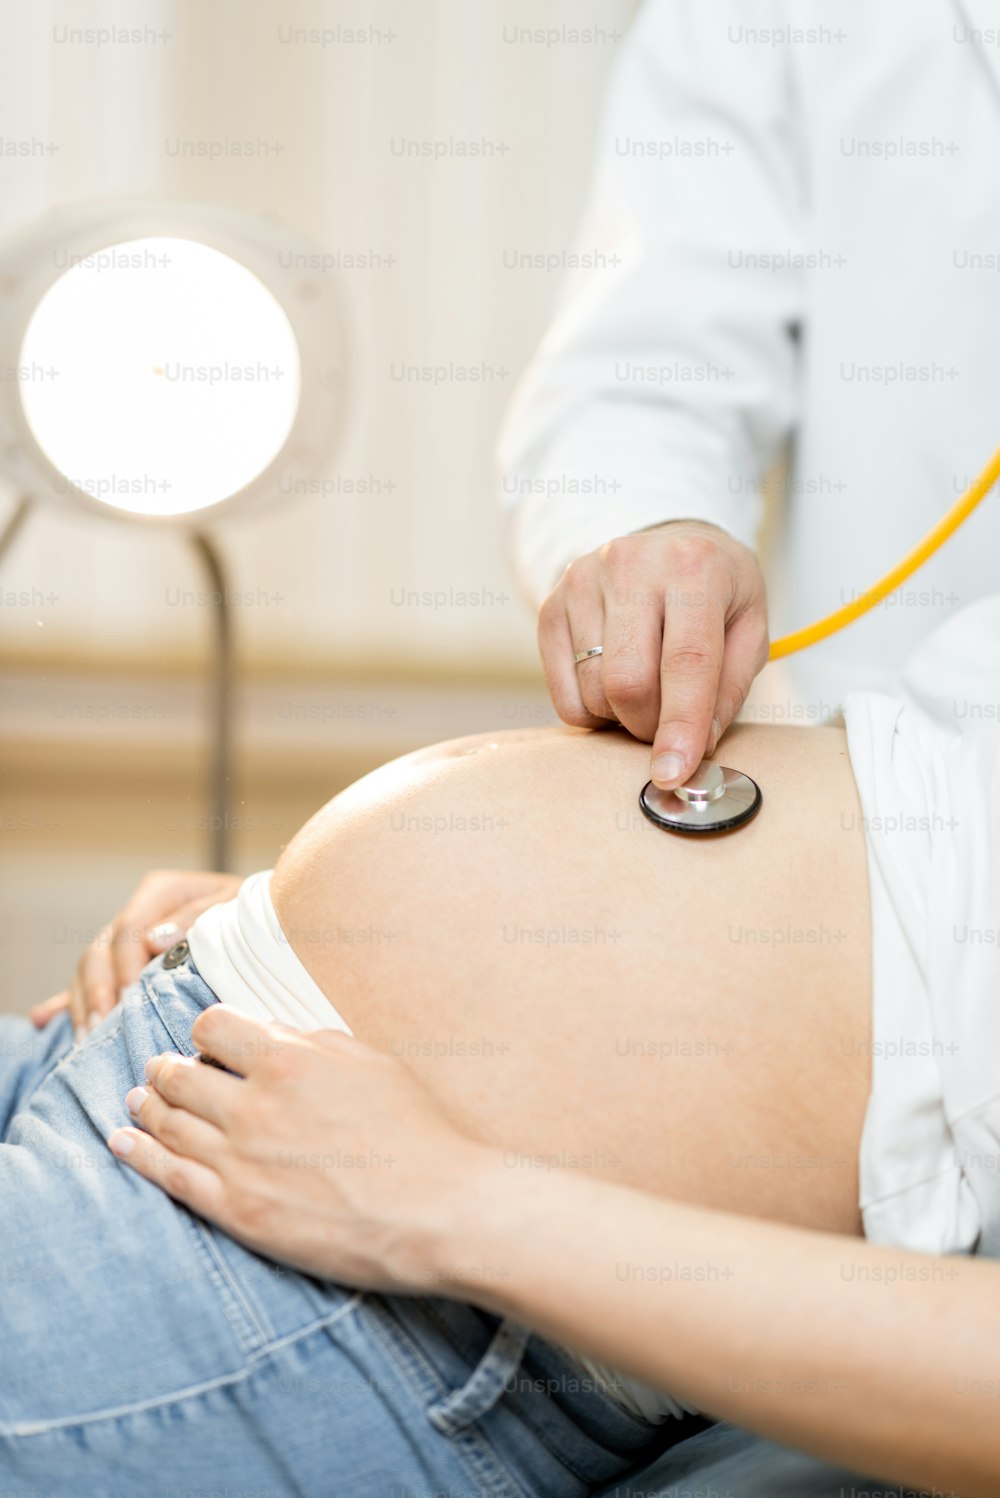 診察中に聴診器で妊婦のお腹を聞く医師、クローズアップ